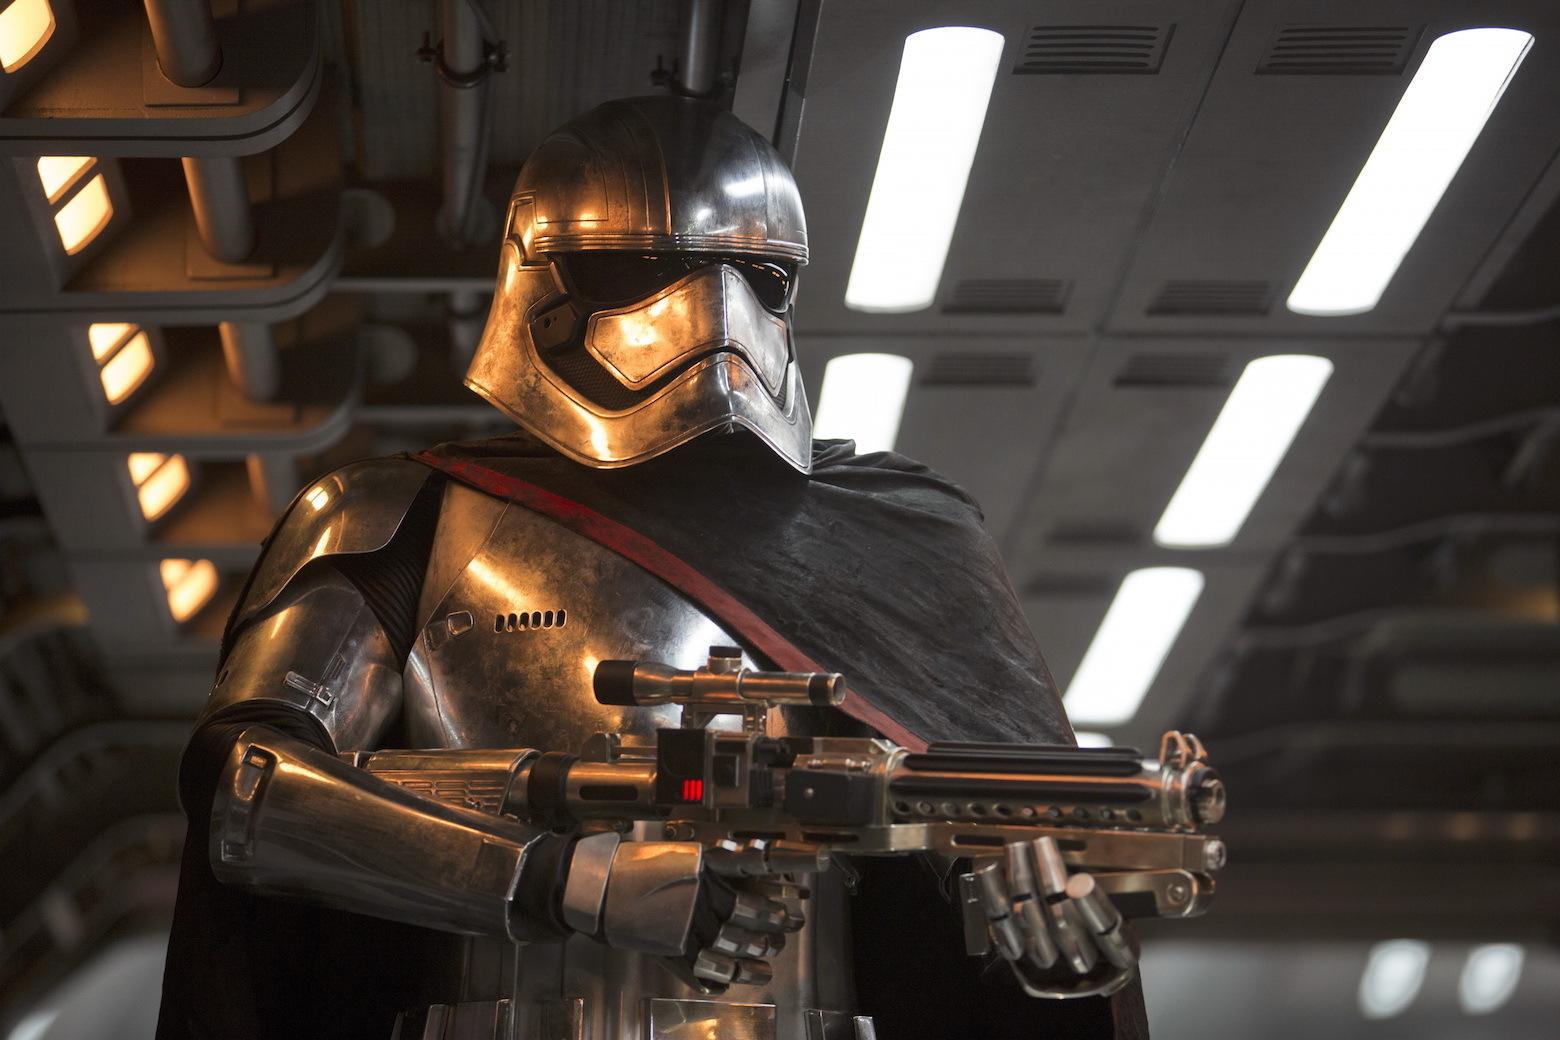 Disney atrasa o lançamento do livro de Star Wars: O Despertar da Força para evitar Spoilers